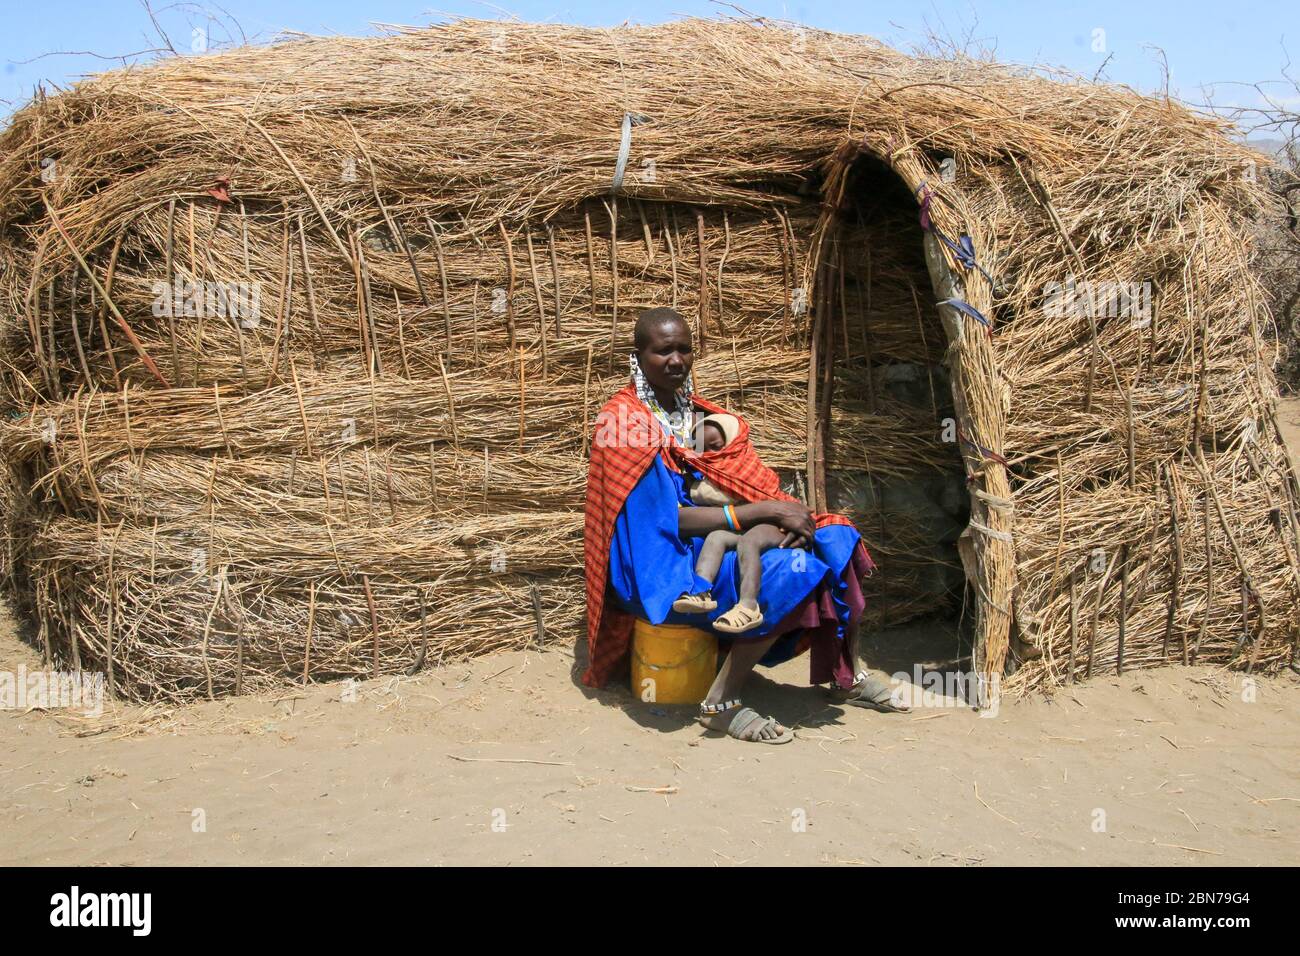 Maasai Mujer y bebé se sientan frente a su cabaña de barro y paja. Maasai es un grupo étnico de gente semi-nómada. Fotografiado en Tanzania Foto de stock